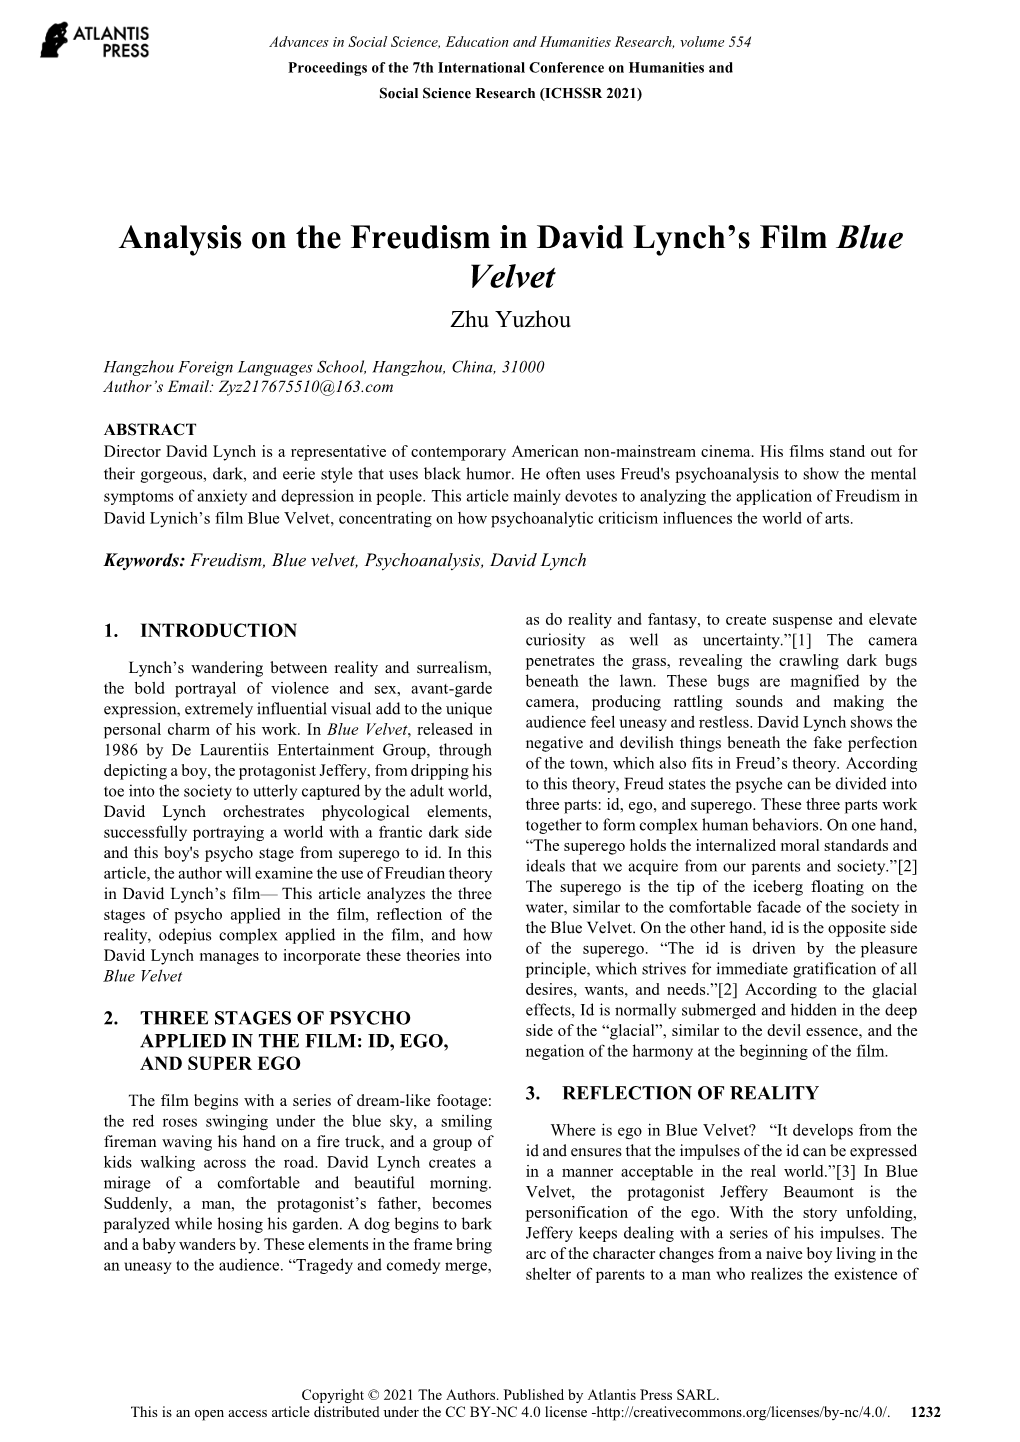 Analysis on the Freudism in David Lynch's Film Blue Velvet